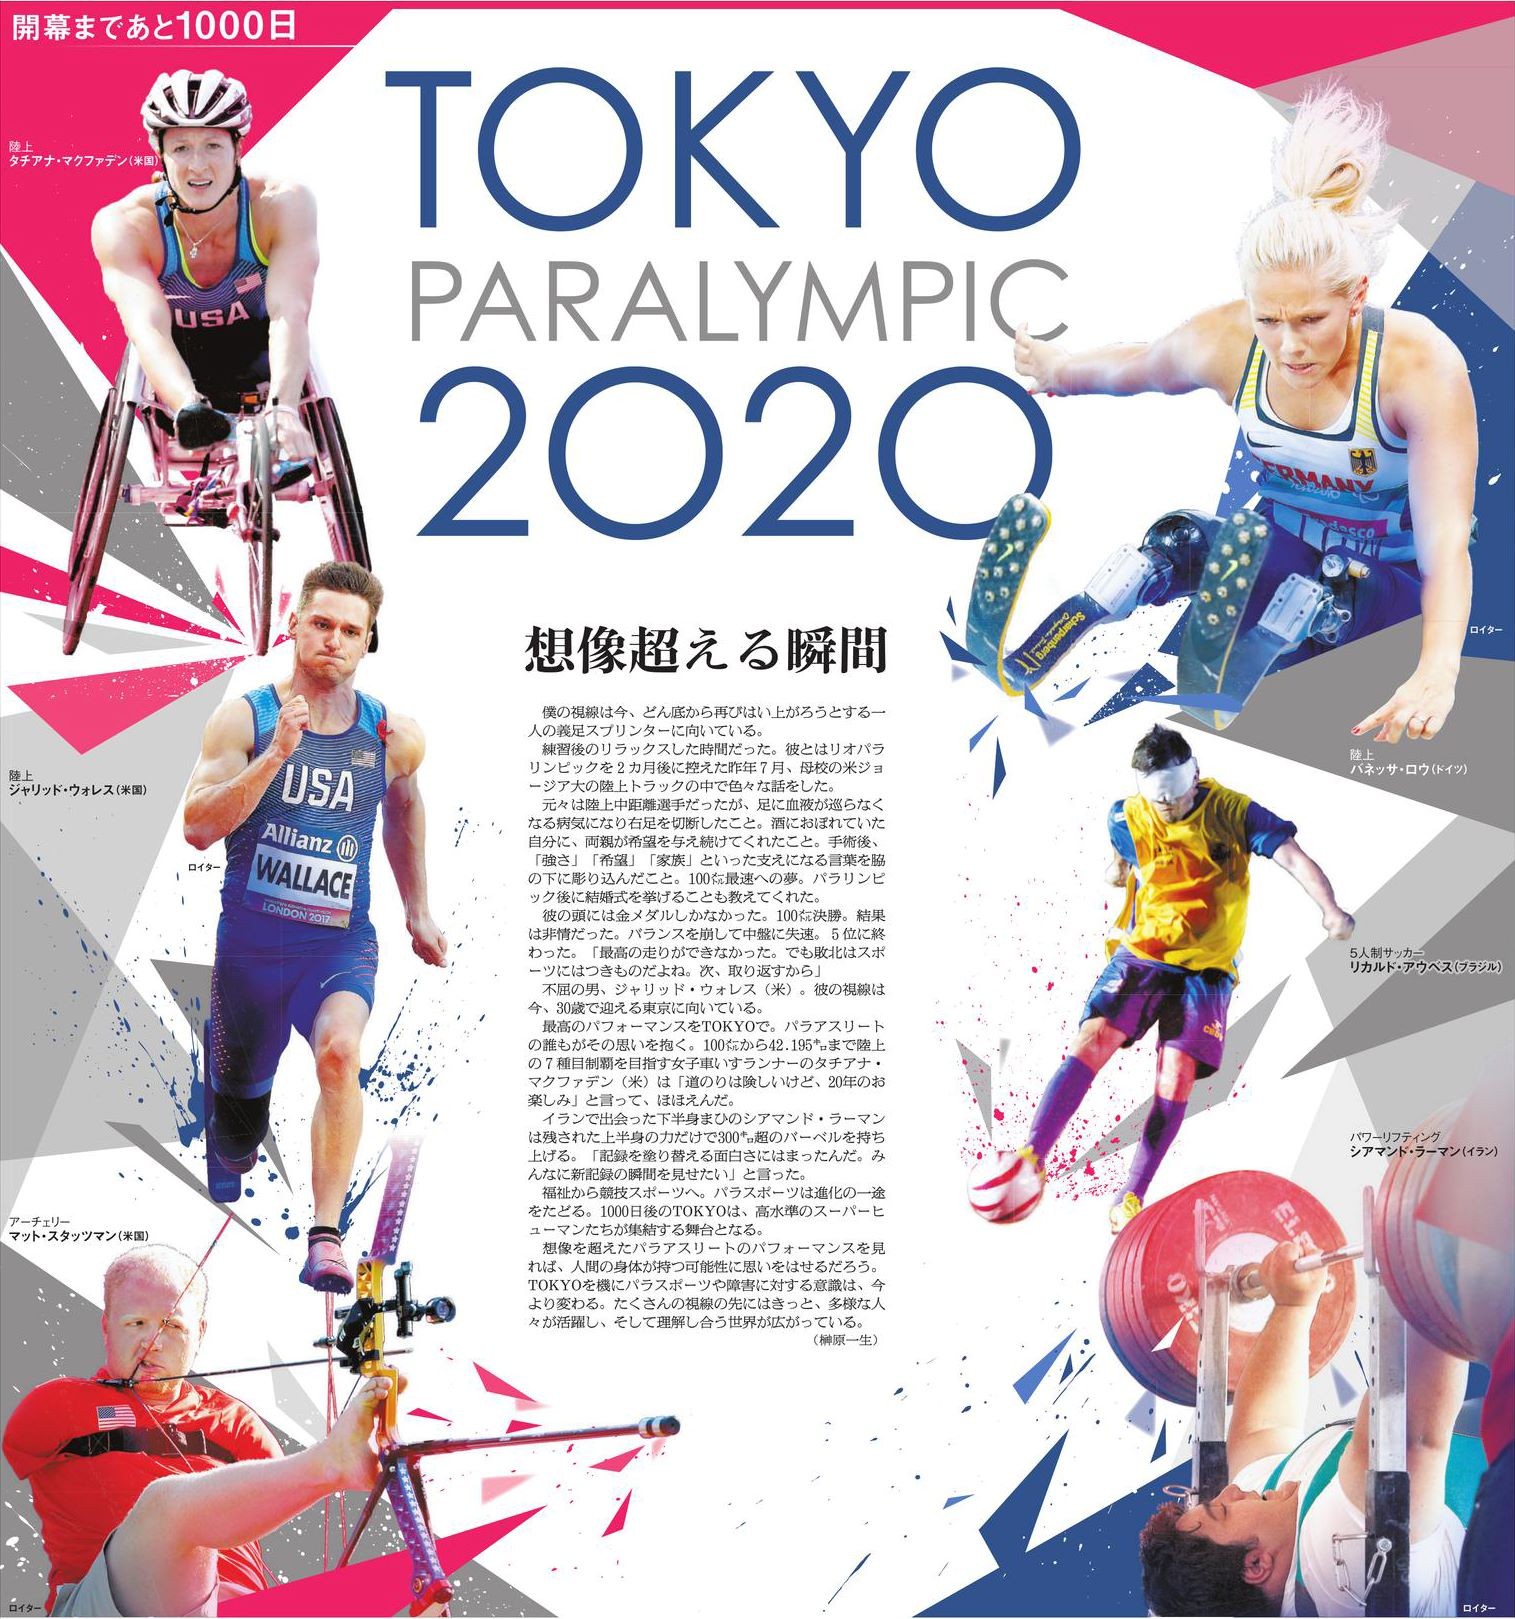 新聞本紙とは分けて届けられる「別刷り」。全ページのエディトリアルとグラフィックを担当。東京パラリンピック1000日前となる2017年11月29日に発行。